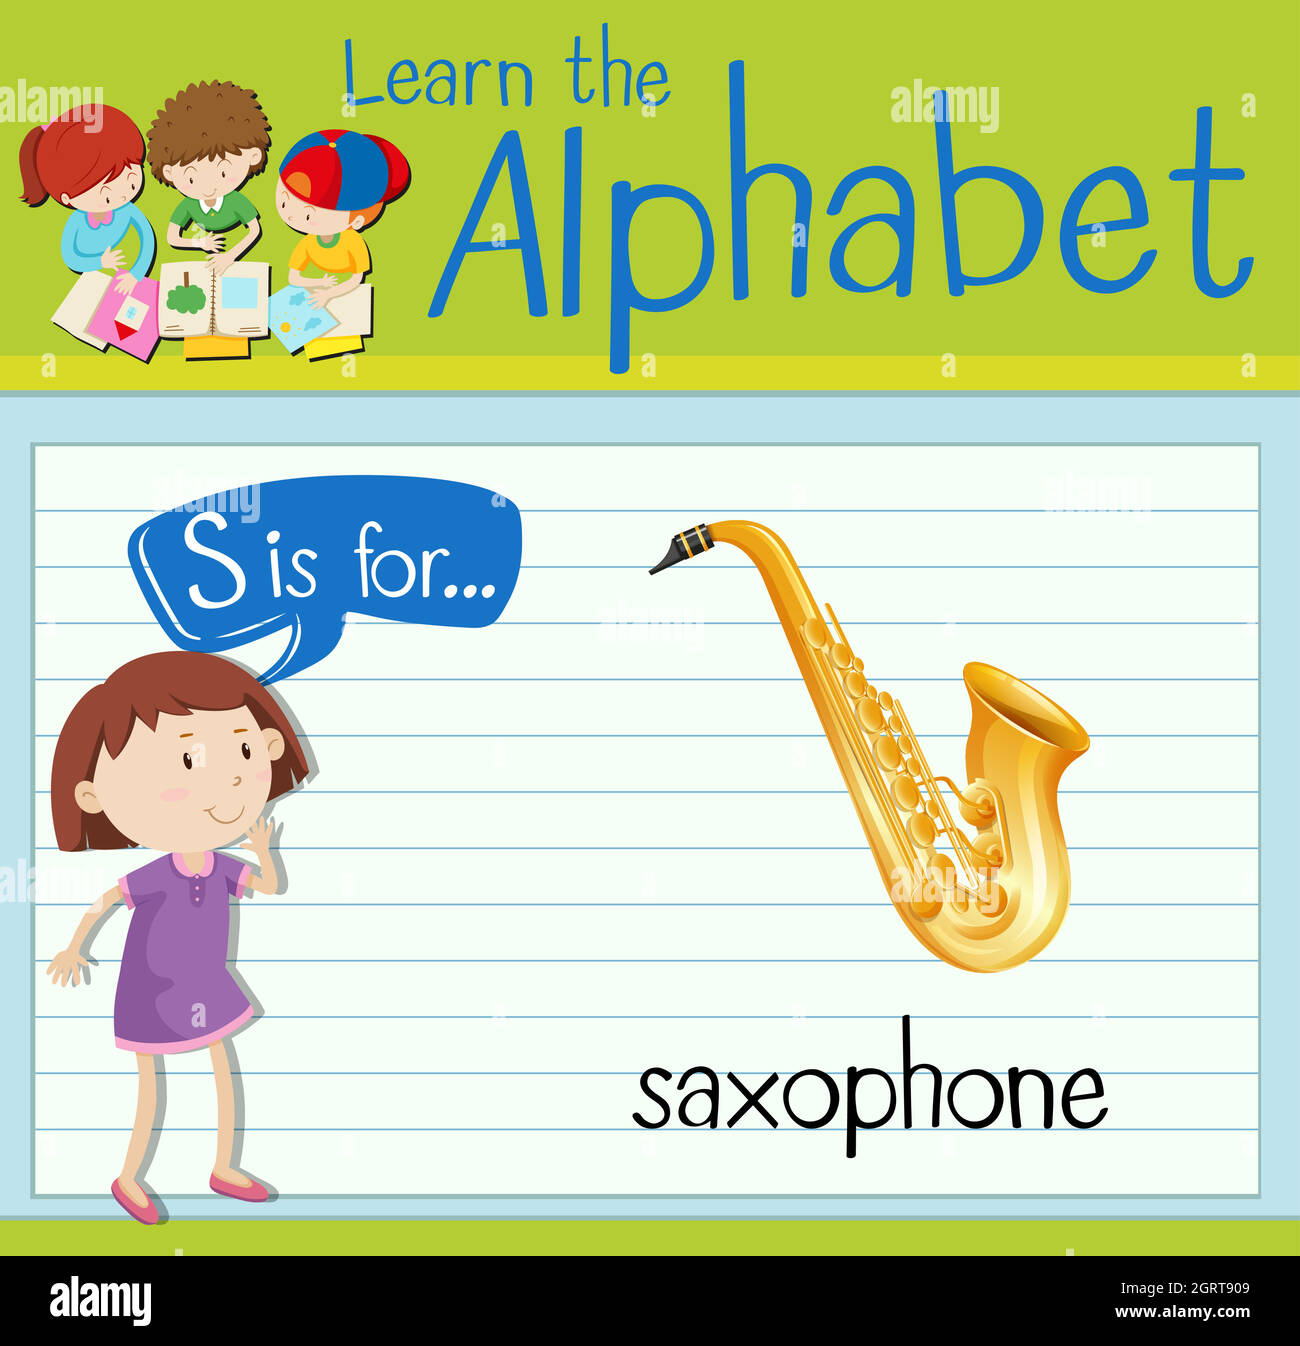 La lettre S de la carte mémoire est destinée au saxophone Illustration de Vecteur